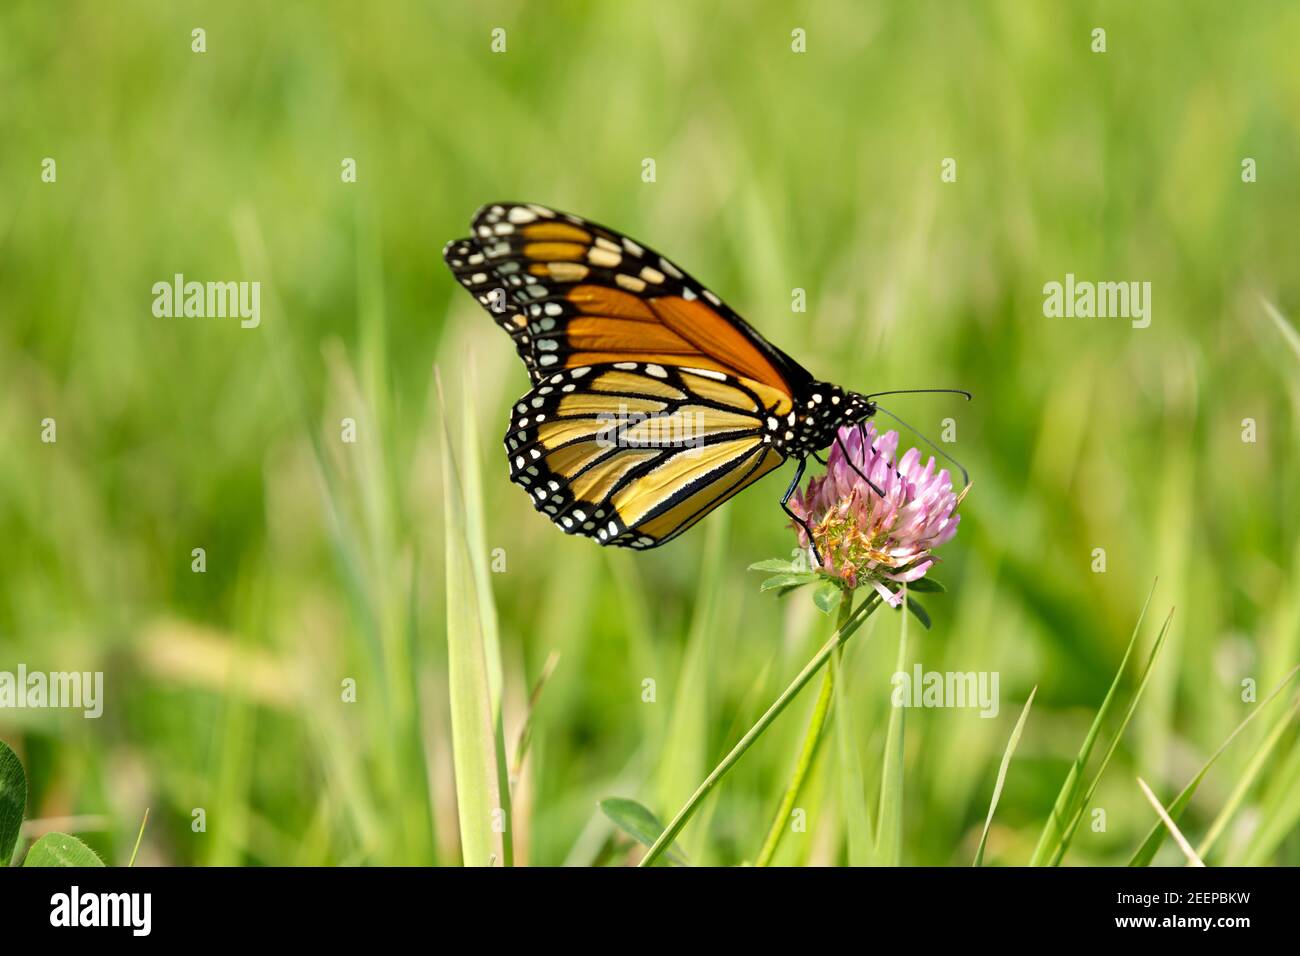 Monarque papillon ( Danaus plexippus) se nourrissant de la fleur de trèfle. Les monarques sont des papillons de moulakaded (sous-famille des Danainae) de la famille des Nymphalidae. Banque D'Images